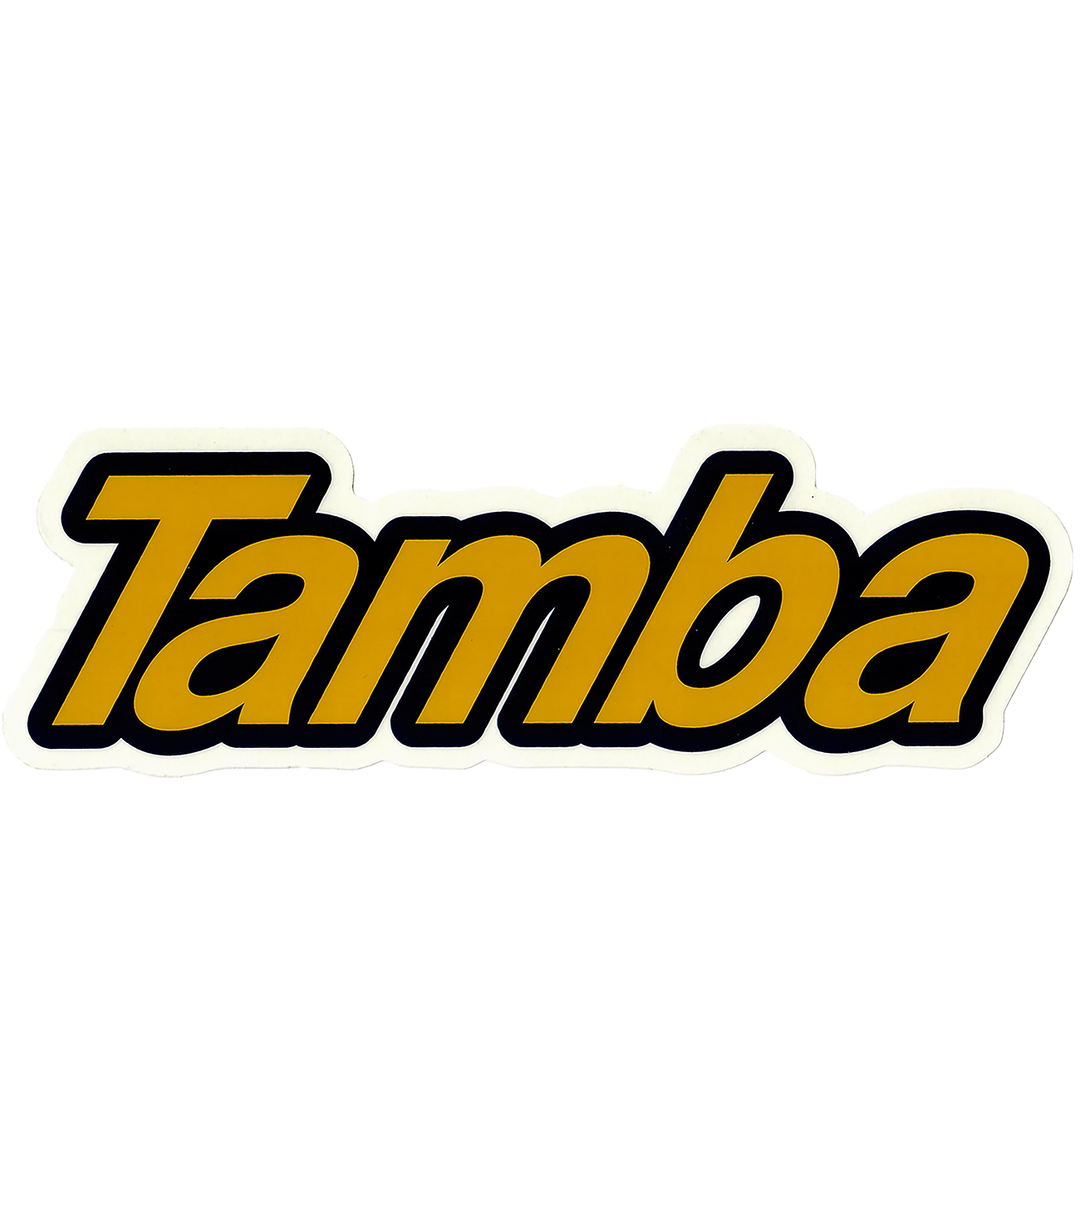 Tamba Contour Logo Sticker 9 x 3